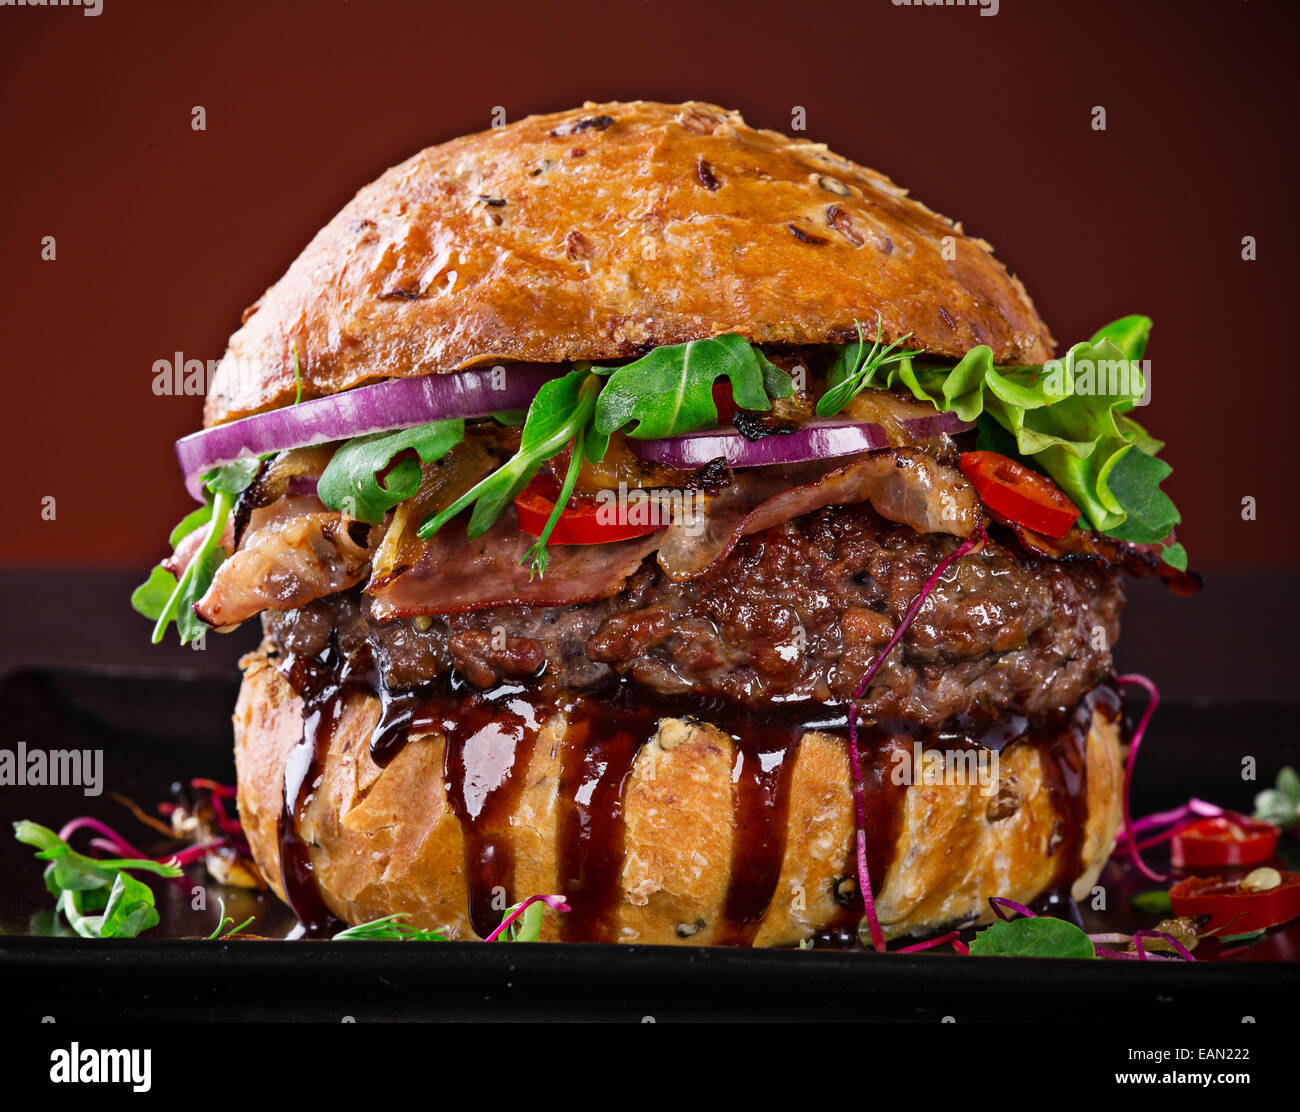 Deliziosi hamburger su sfondo di legno Foto Stock